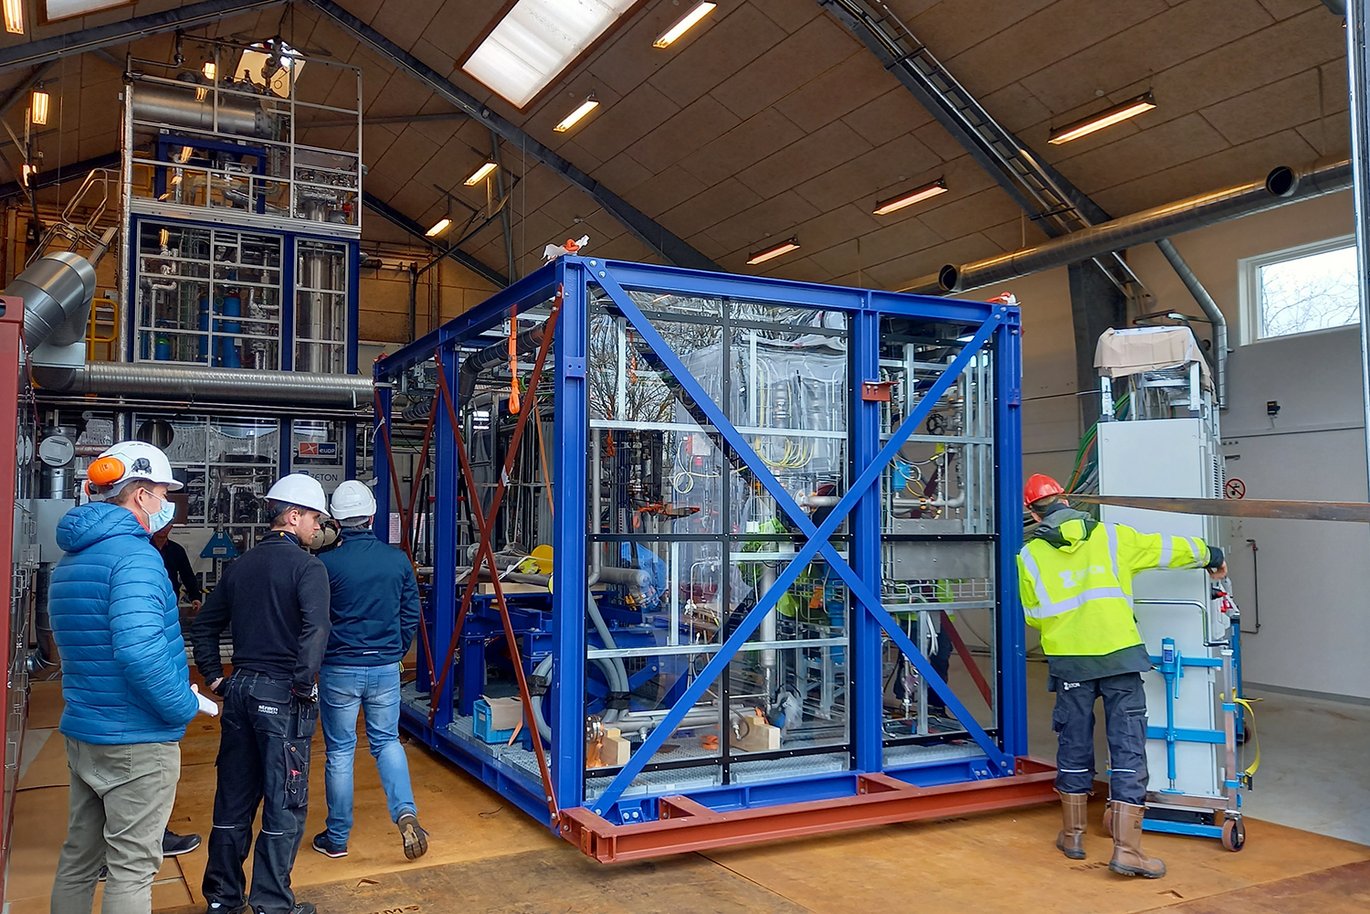 Demoanlægget bliver her installeret som del i Aarhus Universitets energiforskningsanlæg i Foulum. Foto: Thomas Lundgaard.